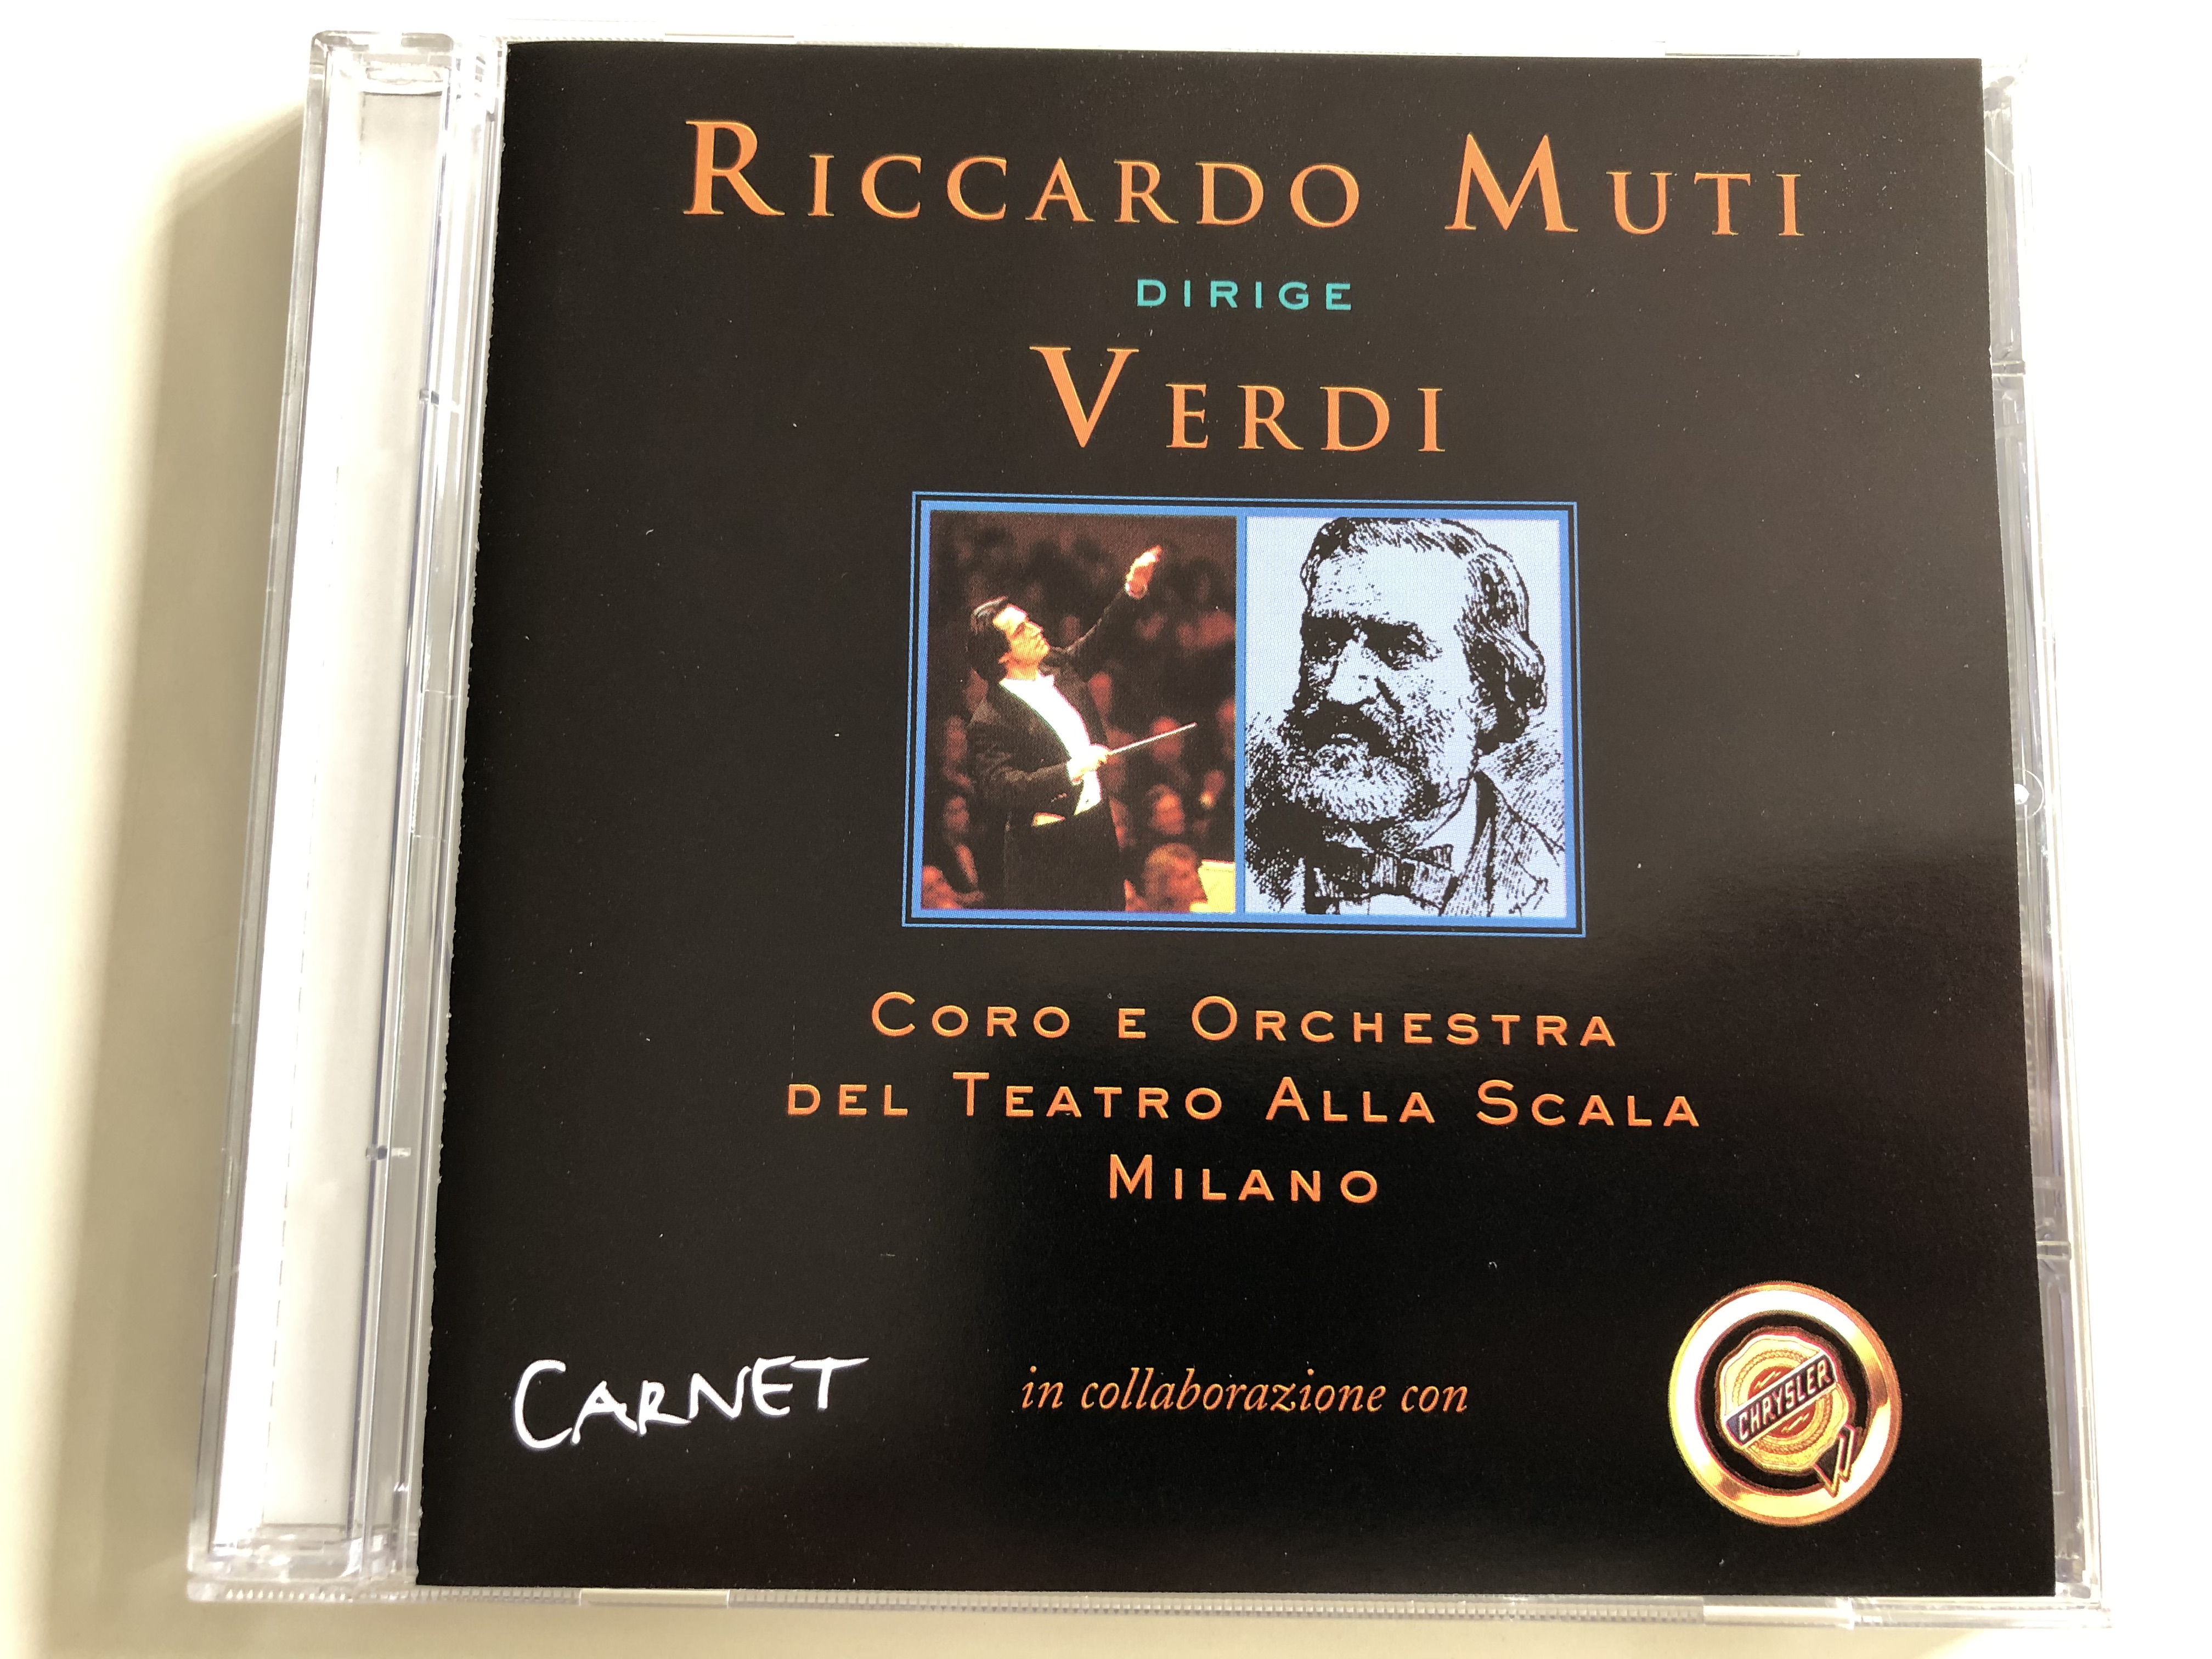 riccardo-muti-dirige-verdi-coro-e-orchestra-del-teatro-alla-scala-milano-emi-records-ltd.-audio-cd-7243-4-71748-2-7-1-.jpg